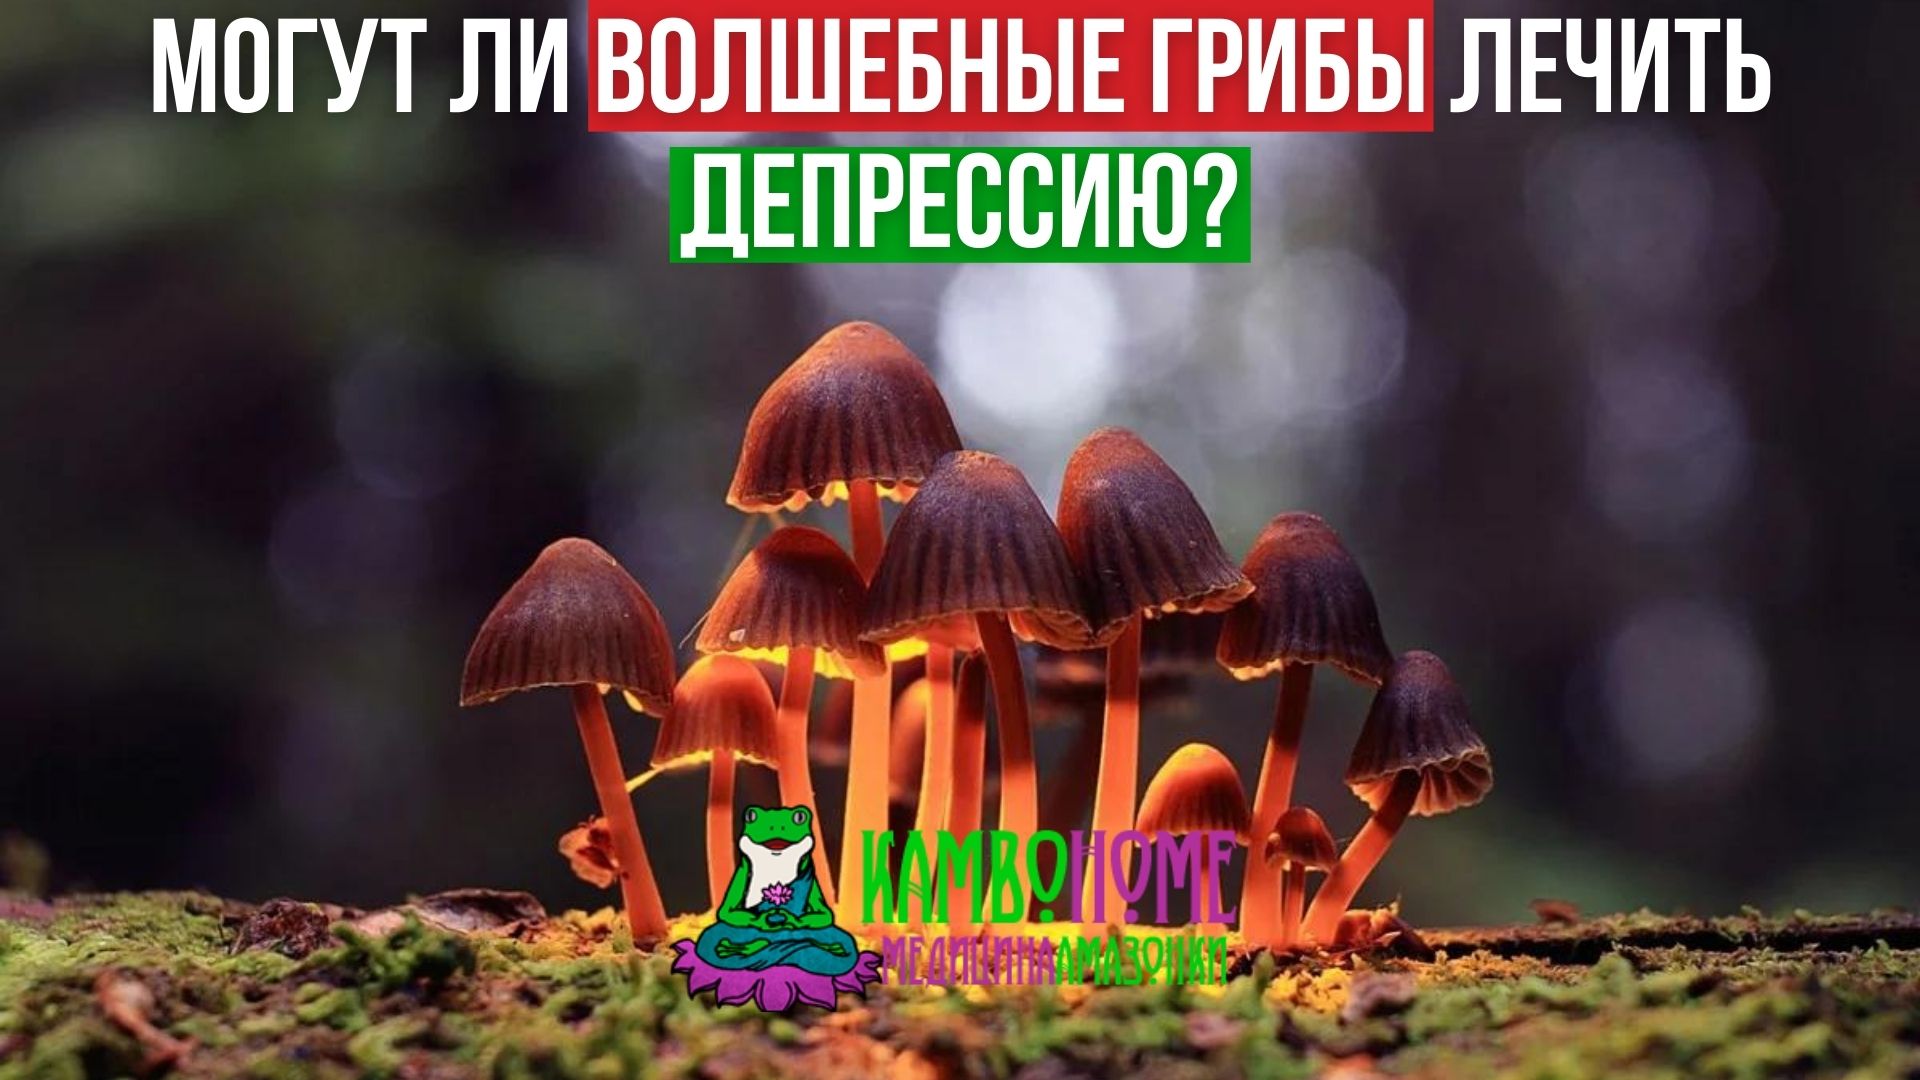 Могут ли волшебные грибы лечить депрессию?